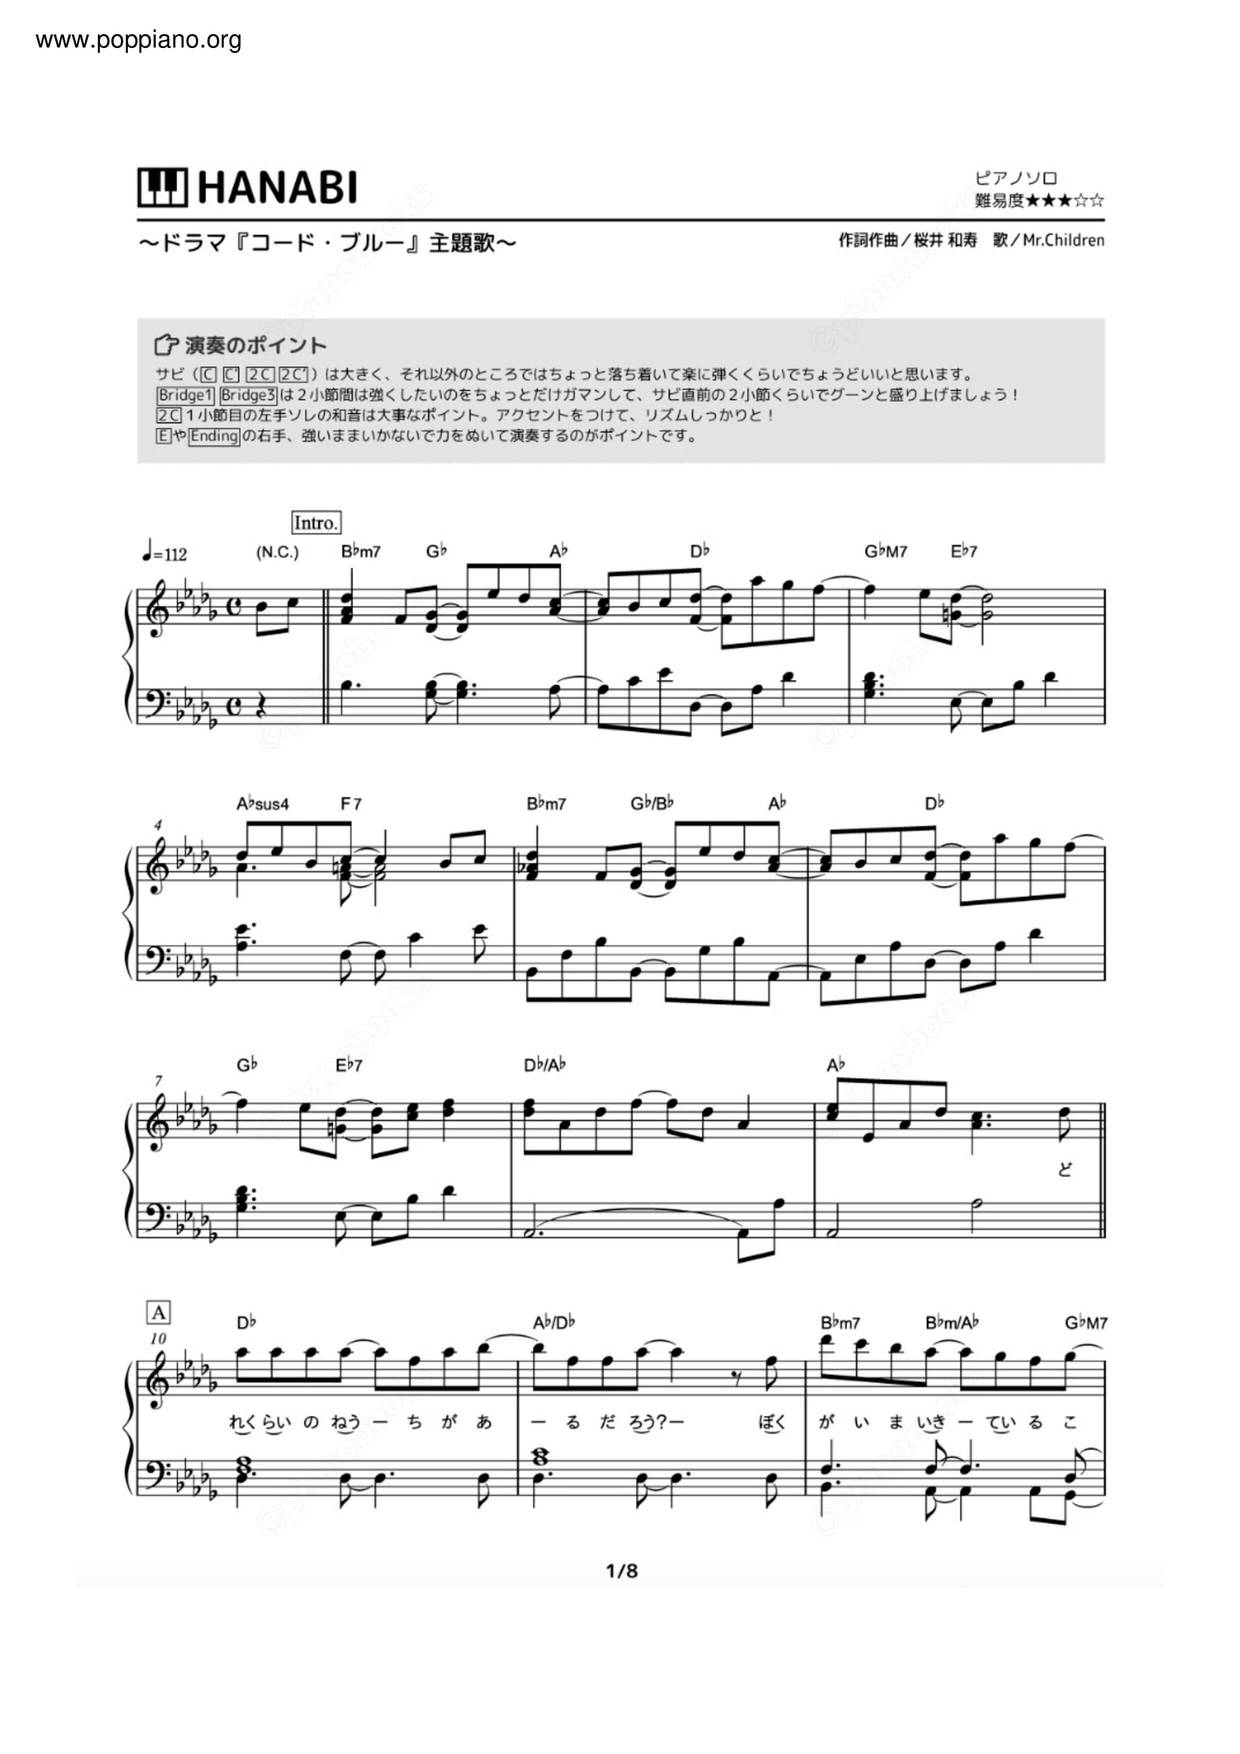 ミスチル Hanabi ピアノ譜pdf 香港ポップピアノ協会 無料pdf楽譜ダウンロード Gakufu